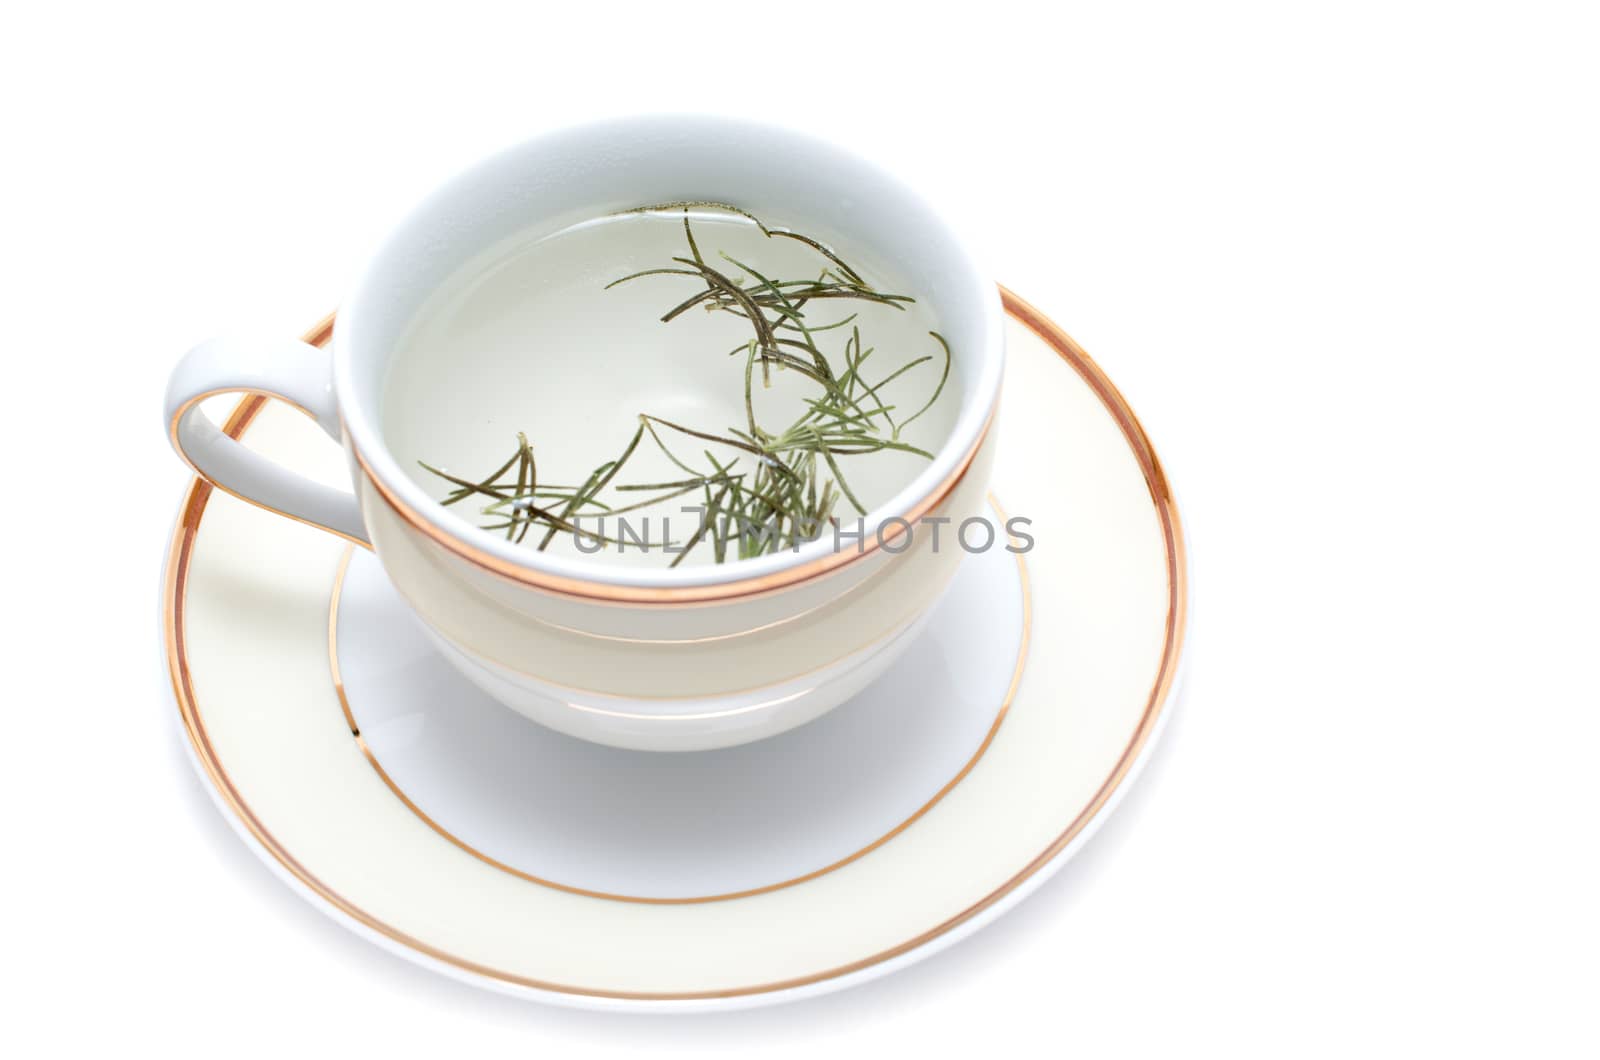 Homemade rosemary tea on white background